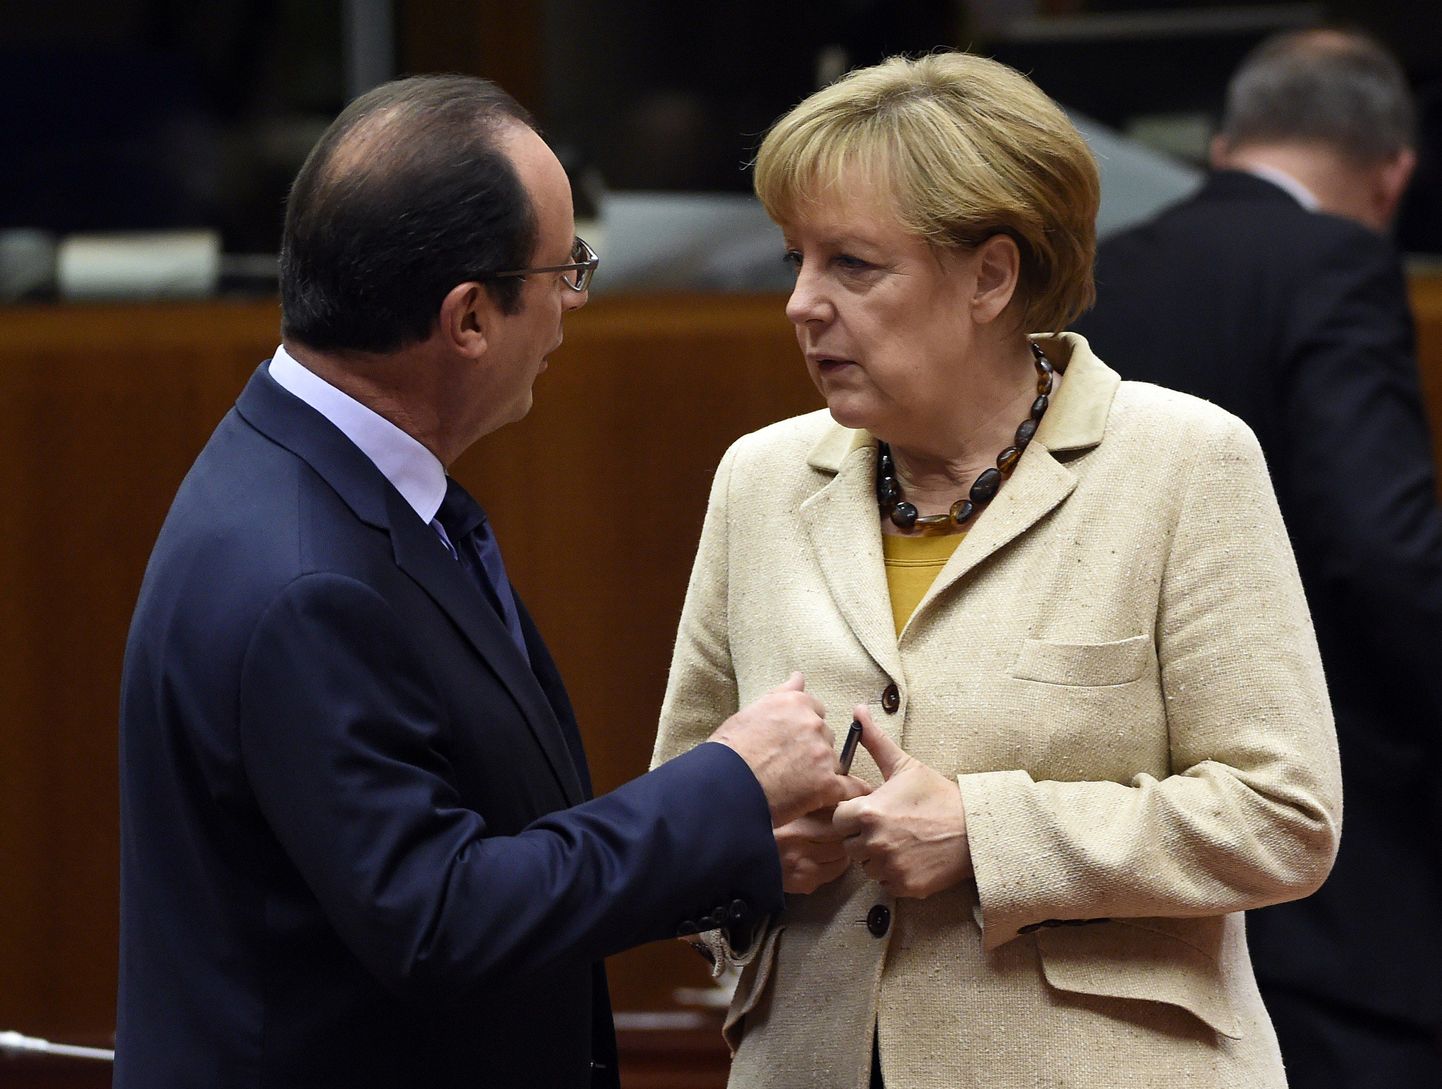 Saksa kantsler Angela Merkel koos Prantsuse presidendi François Hollande'iga.